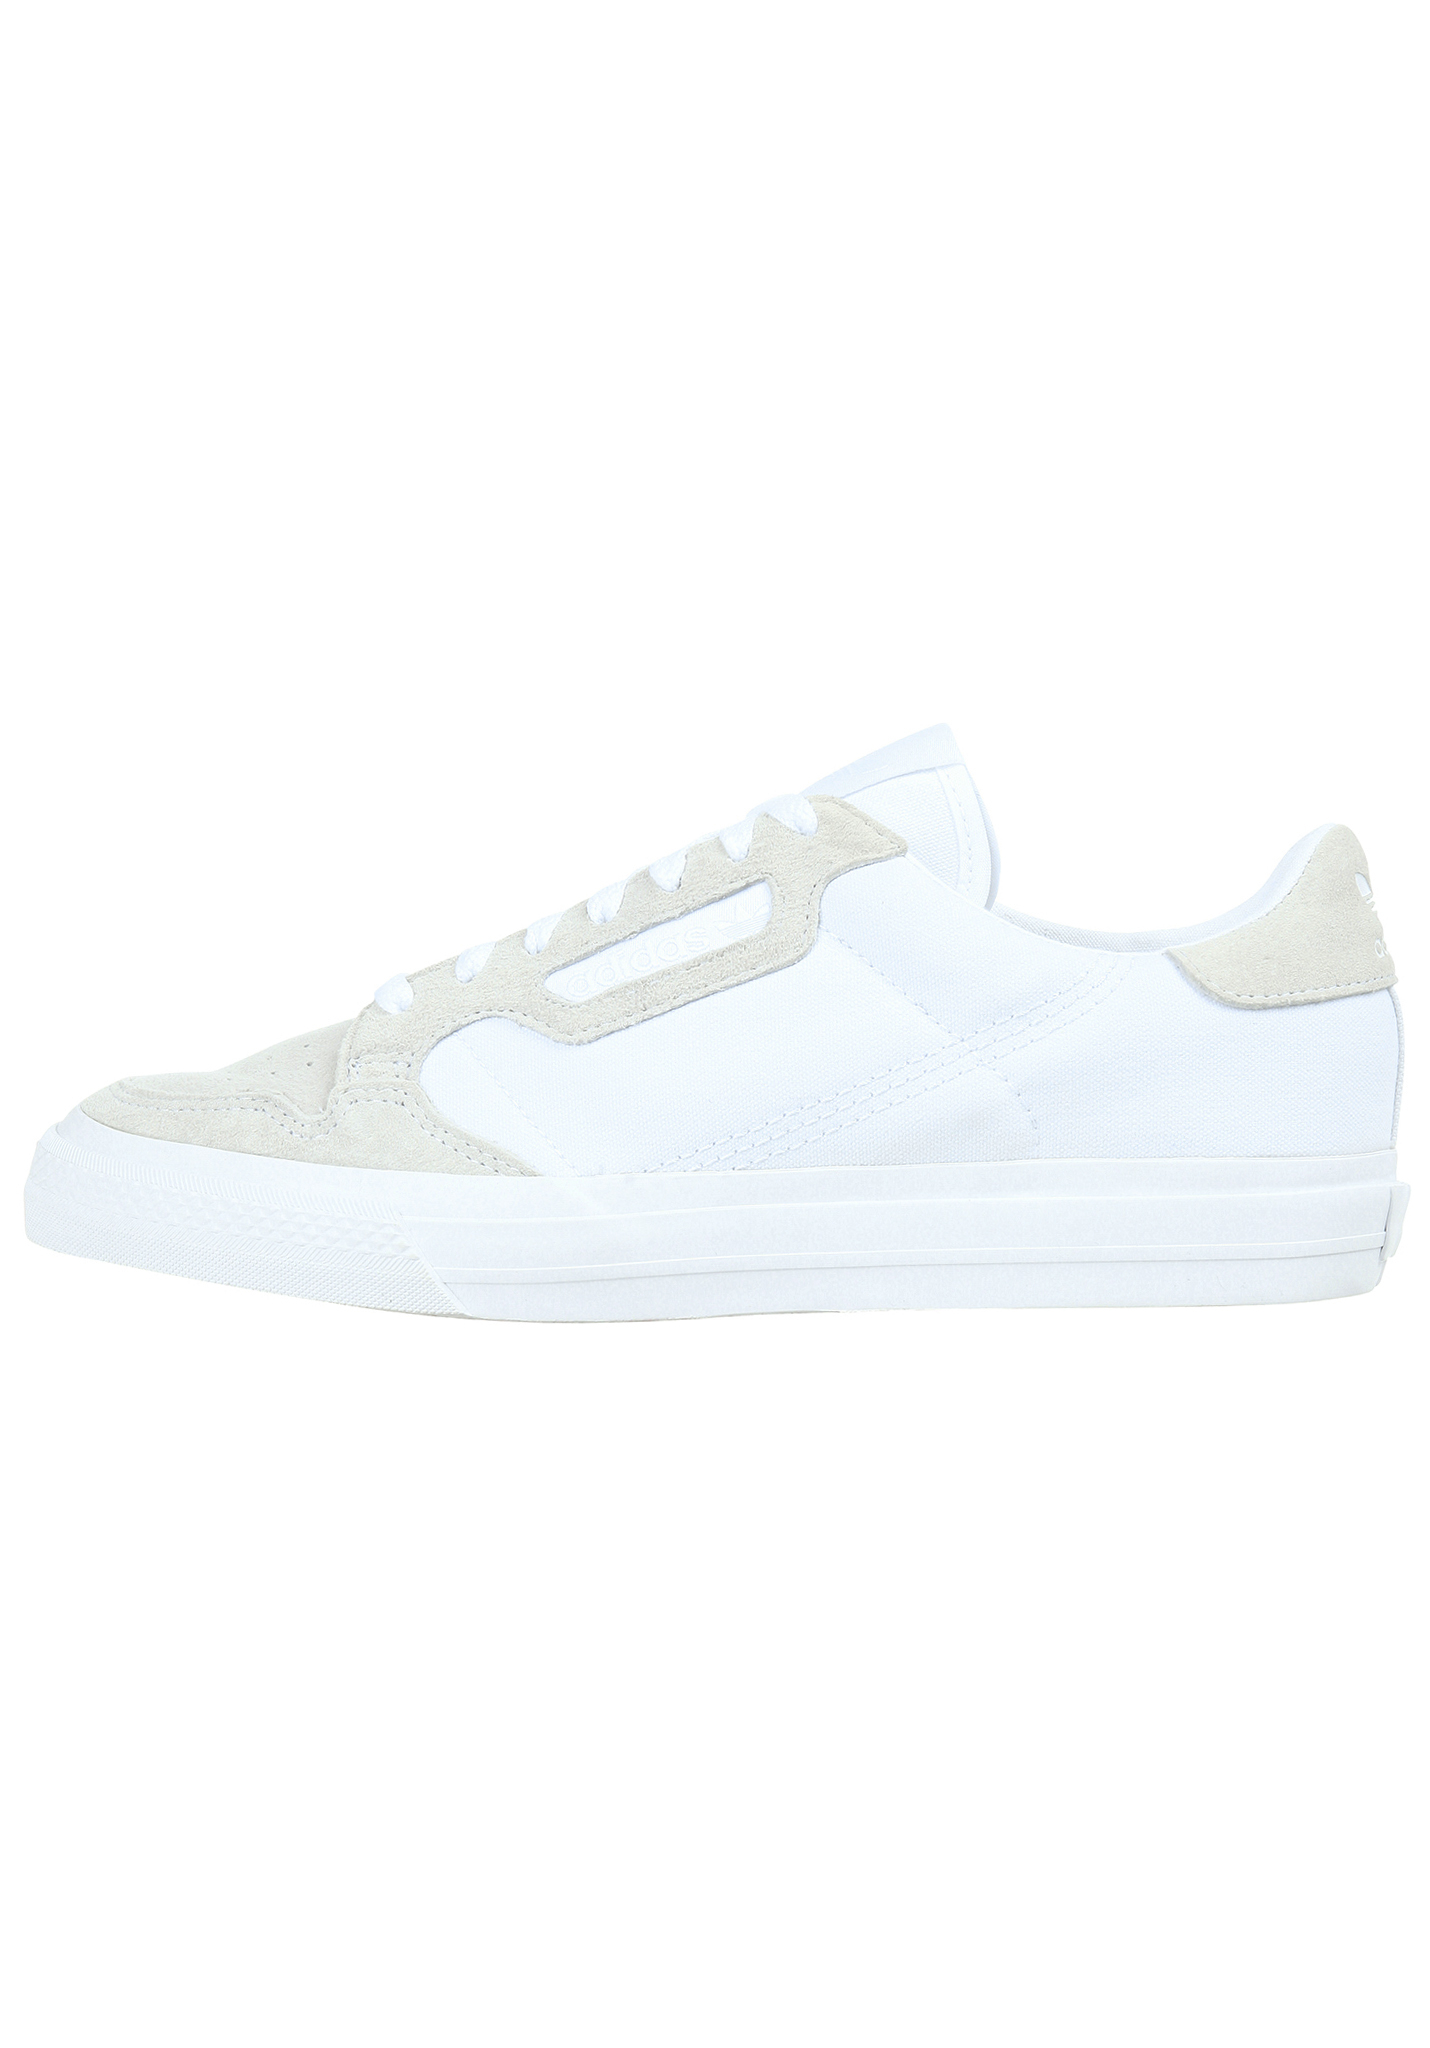 Adidas Originals Continental Vulc Sneaker ftwr white/ftwr white/ftwr white 42